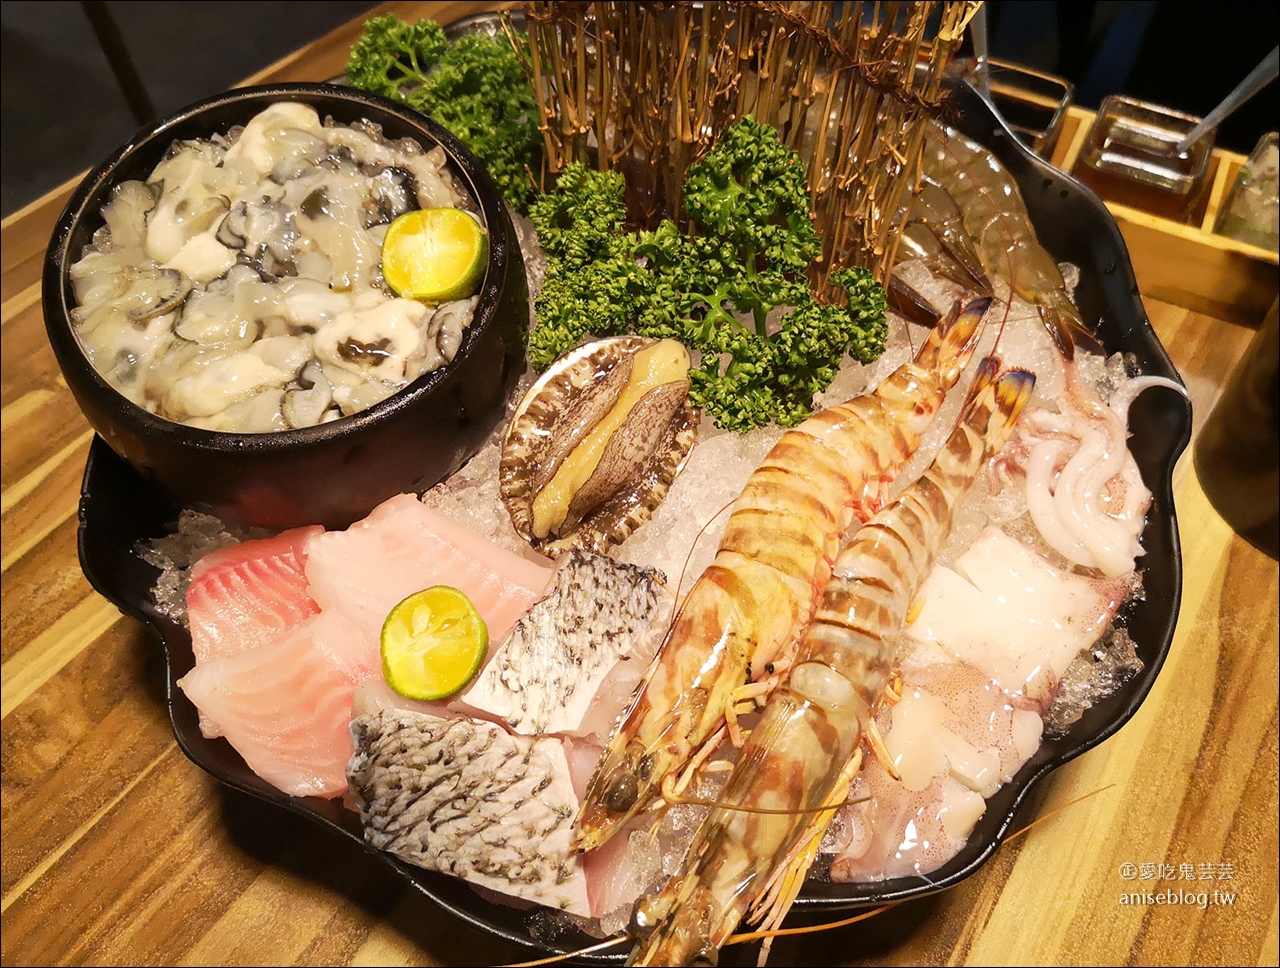 極蜆鍋物，蛤罵滿滿、食材新鮮的鮮美火鍋店 (文末有完整菜單)